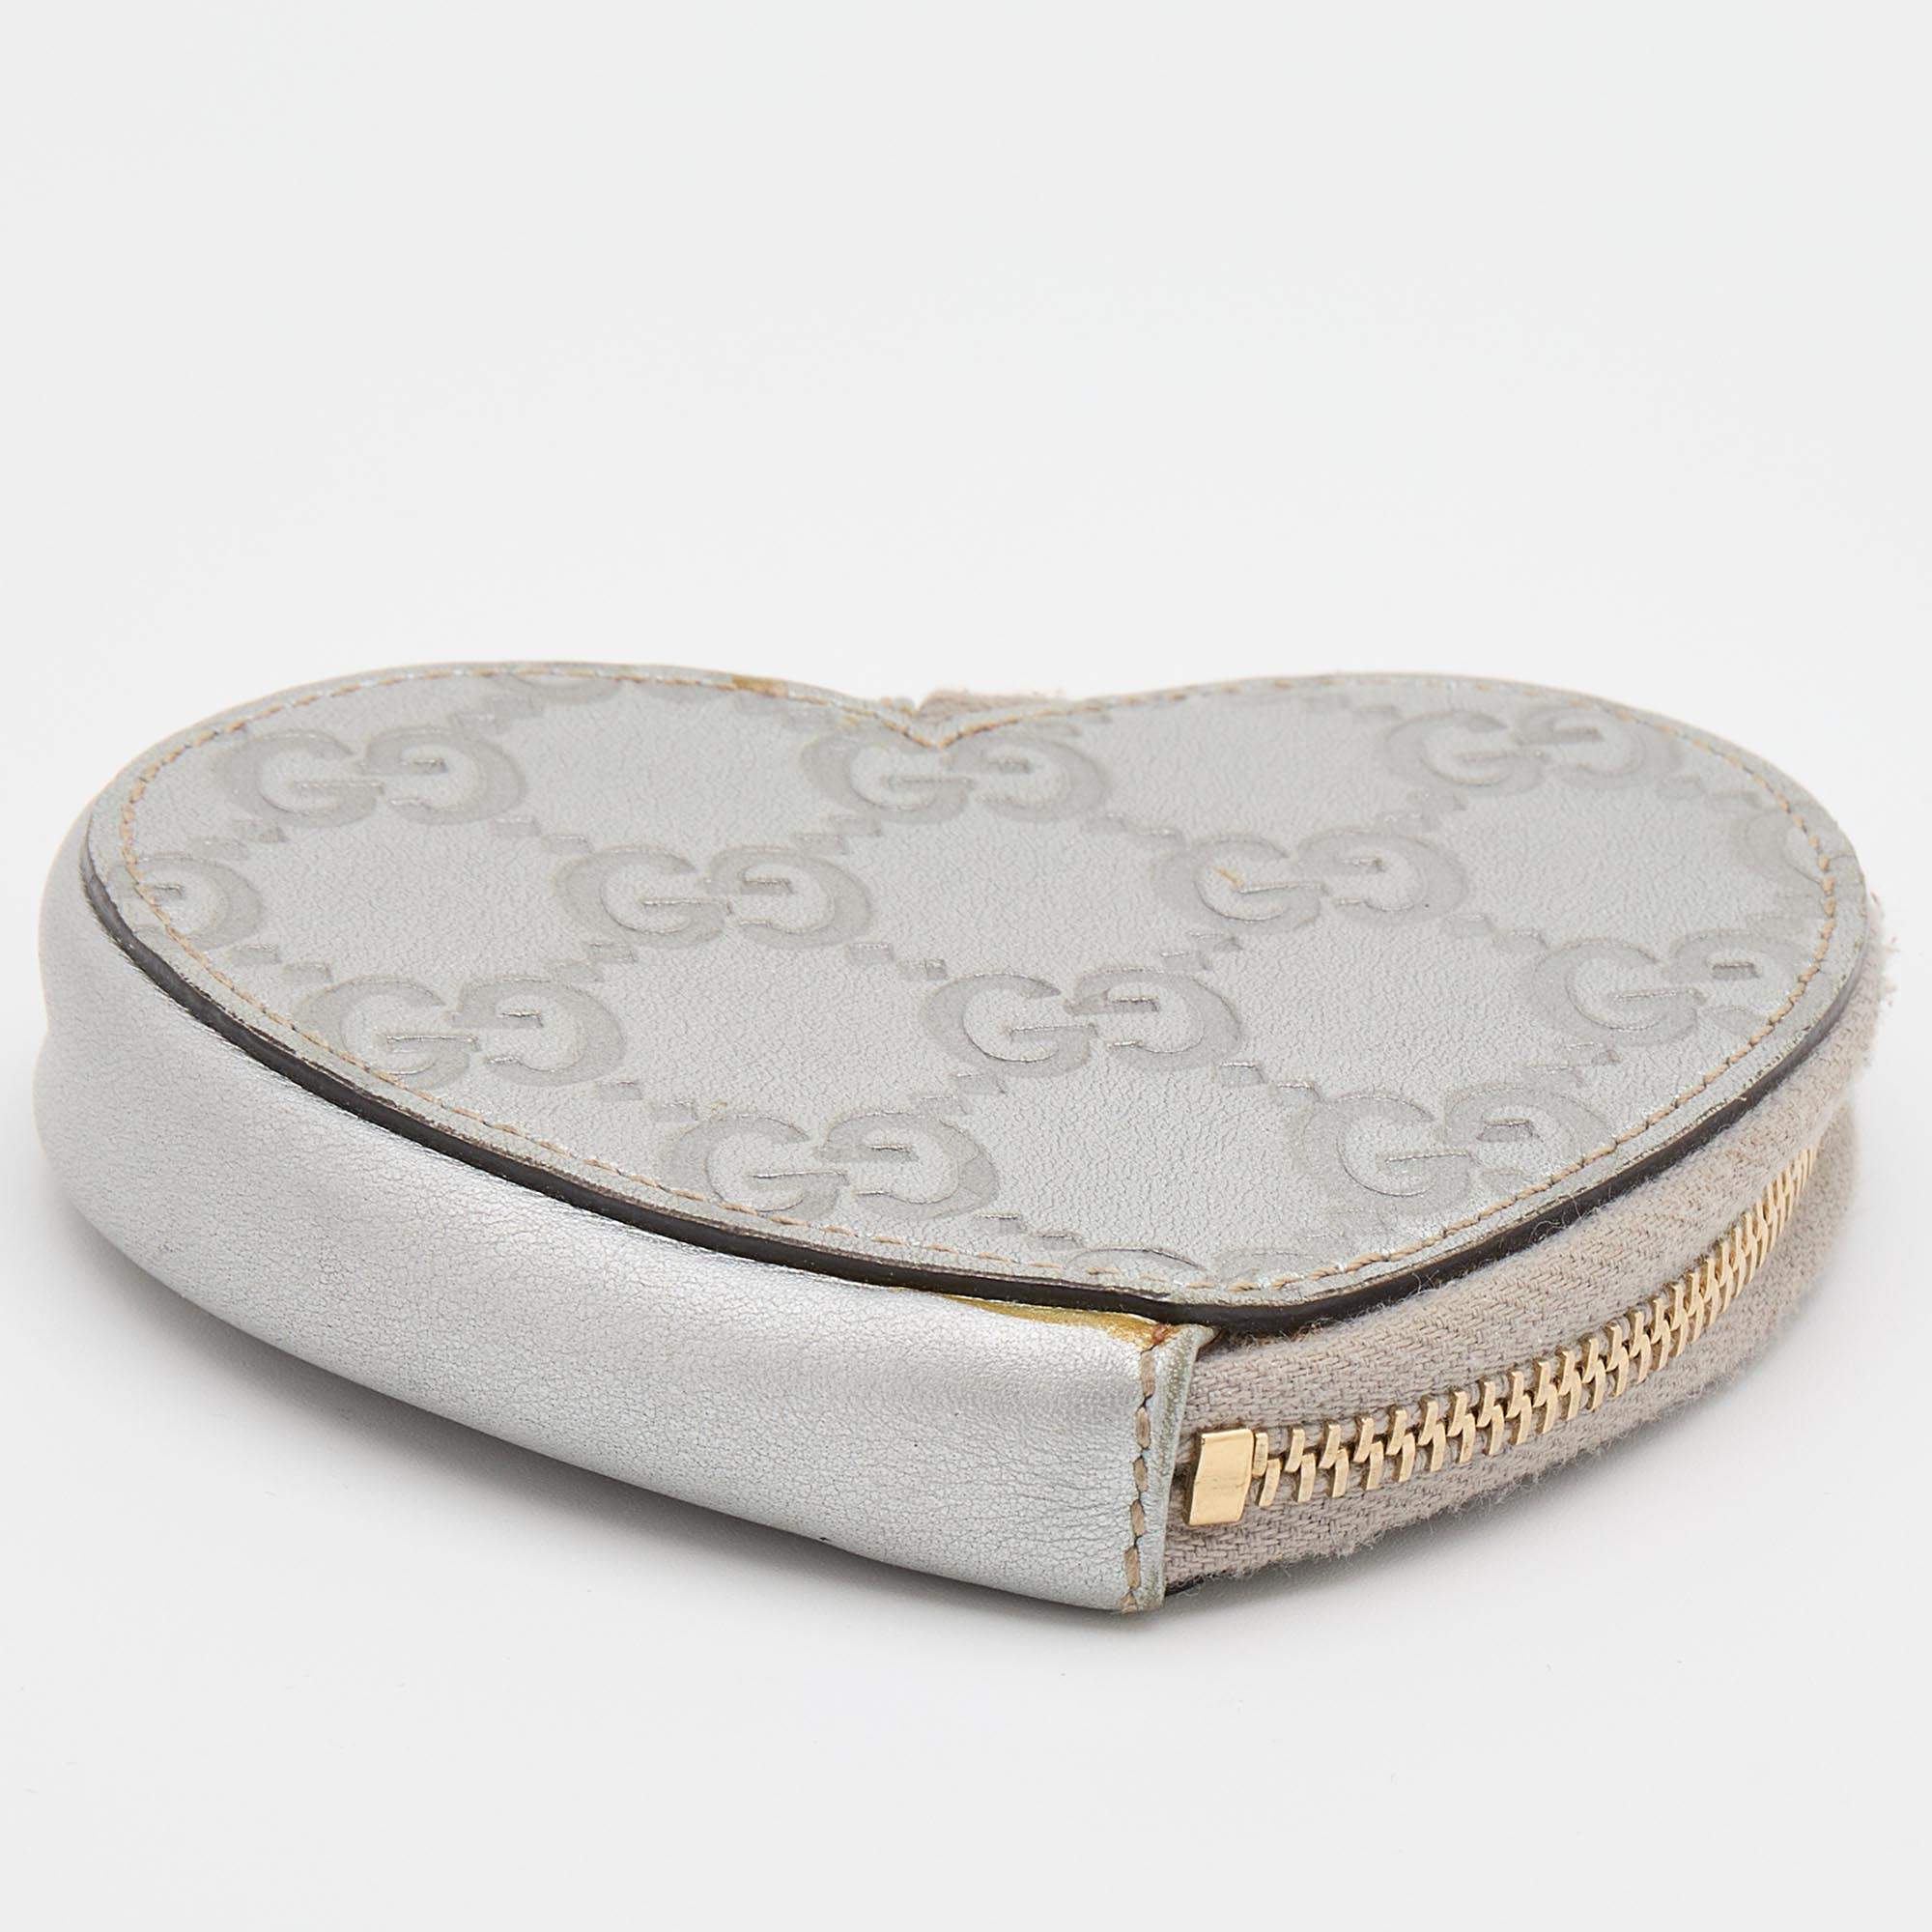 Gucci Silver Guccissima Leather Heart Shape Coin Purse